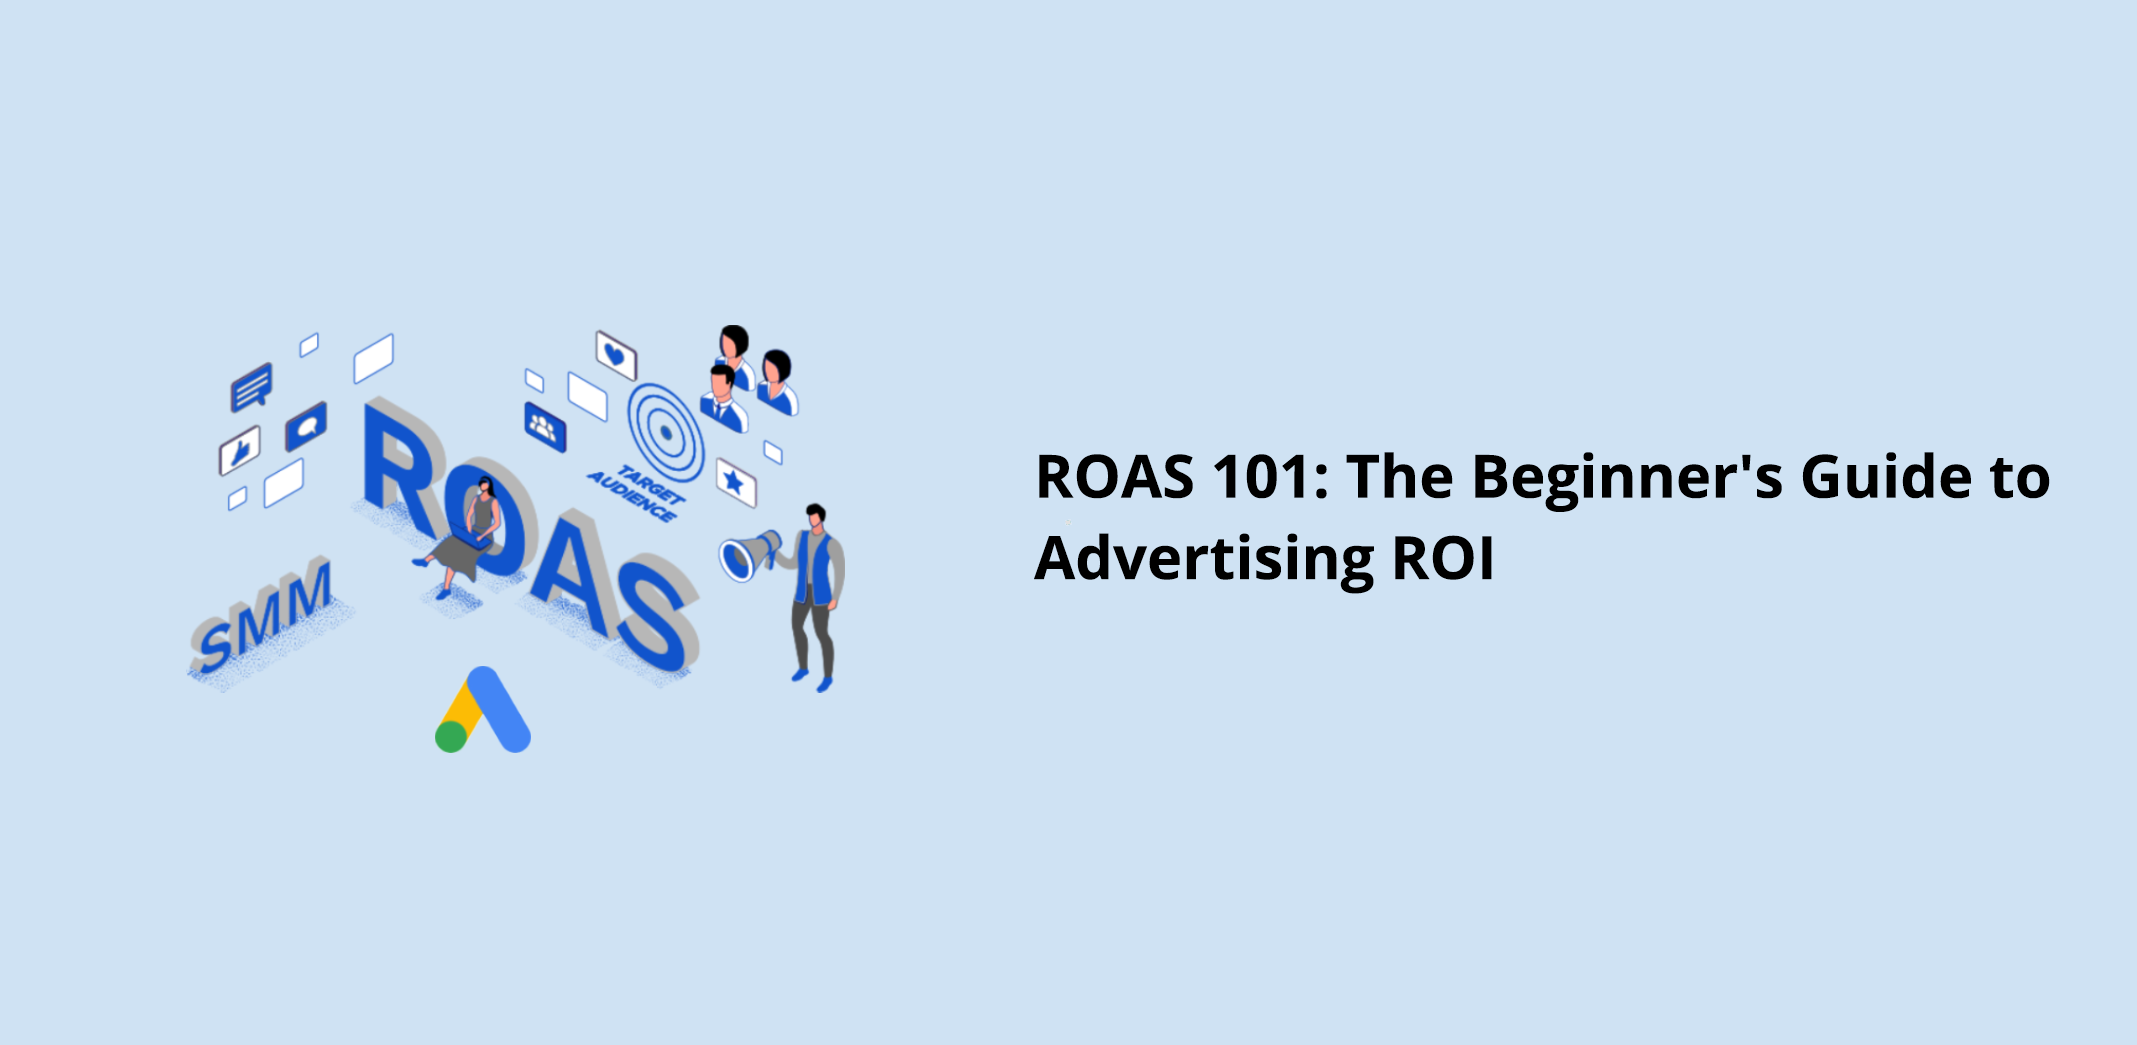 ROAS 101: The Beginner’s Guide to Advertising ROI